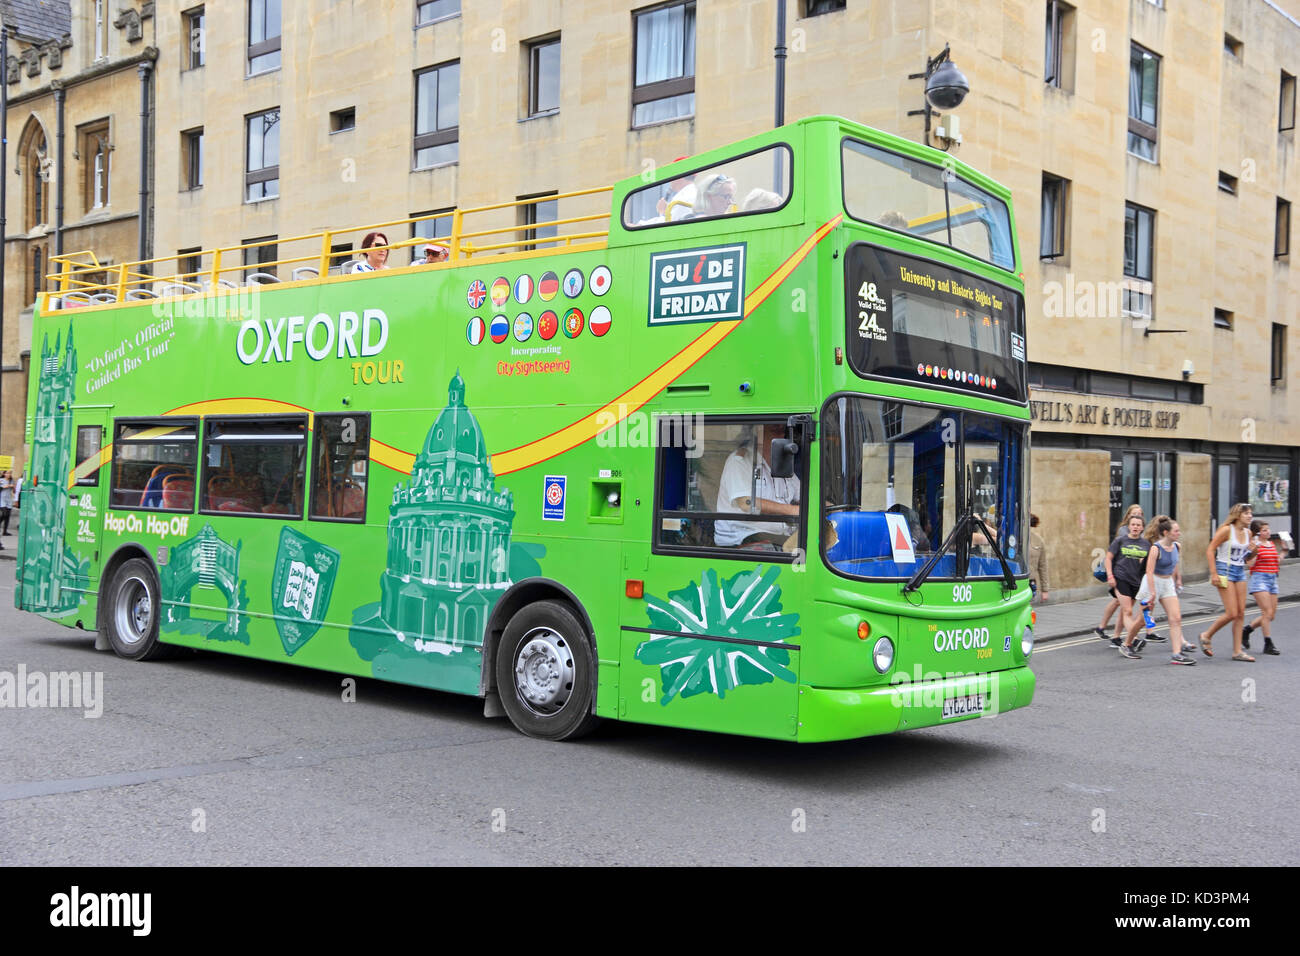 Open tour bus touristiques parées, Oxford, UK Banque D'Images